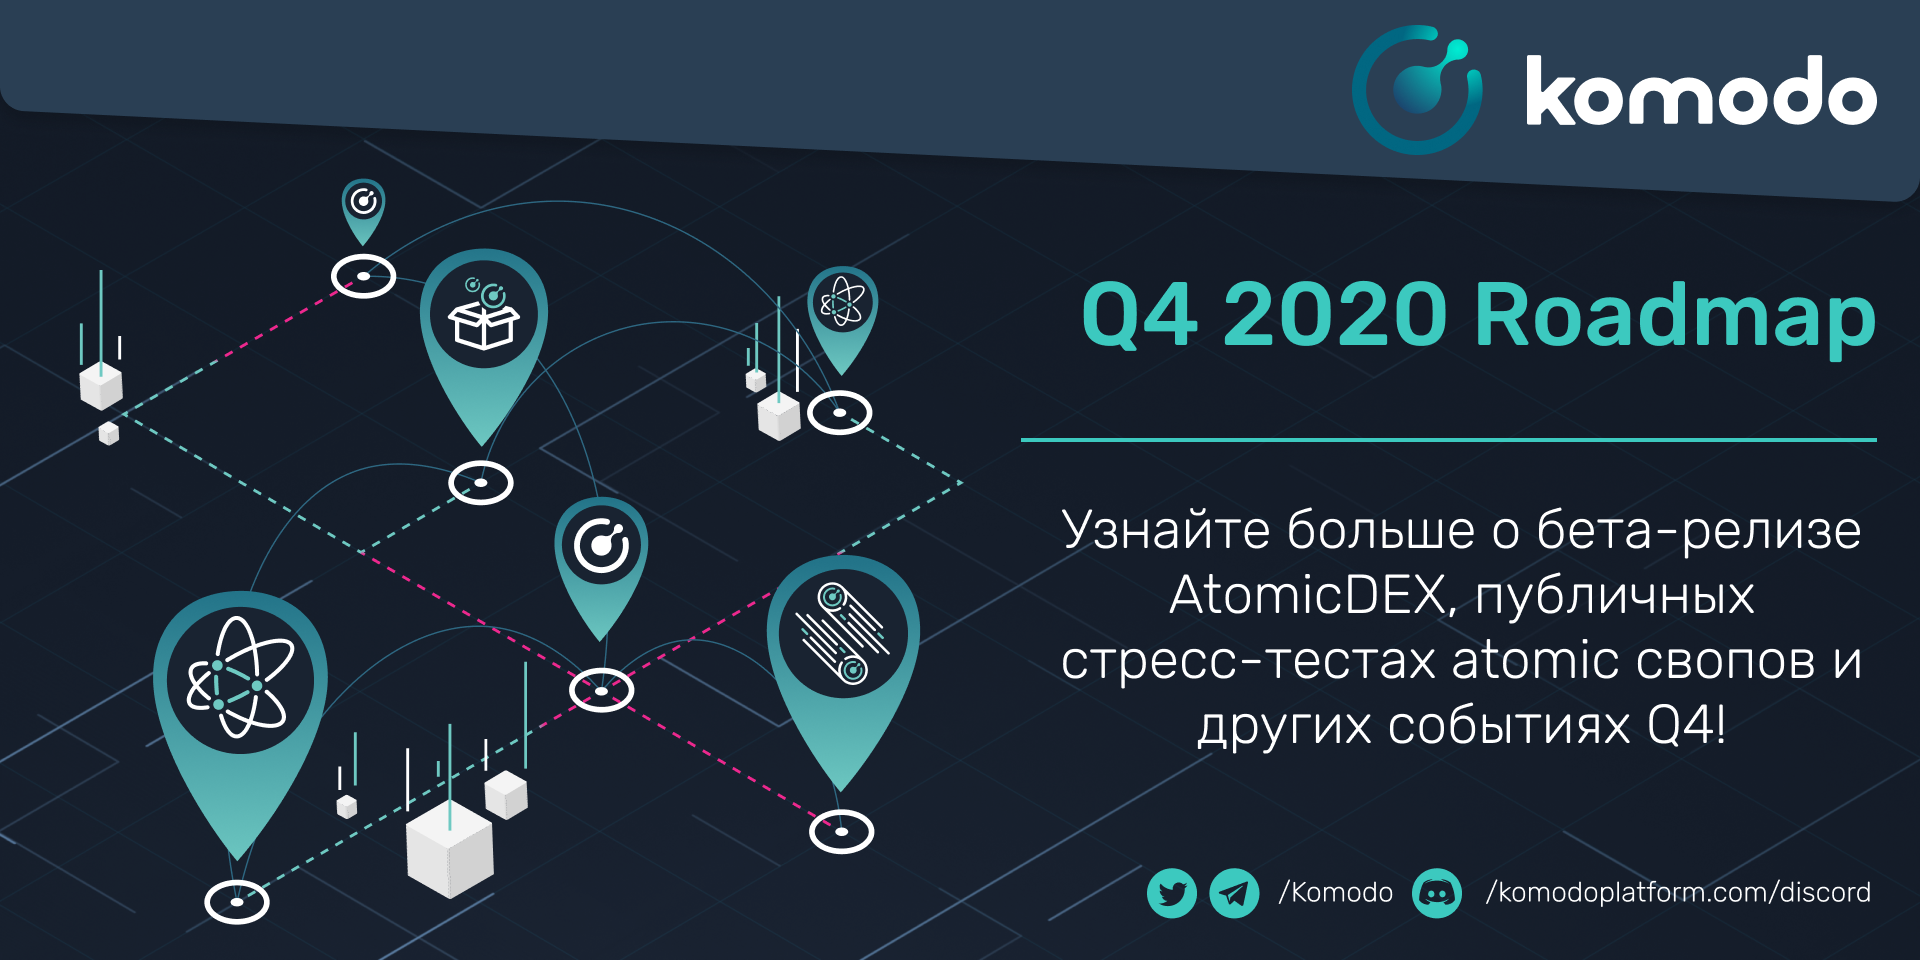 Komodo Q4 2020 Roadmap: что впереди?